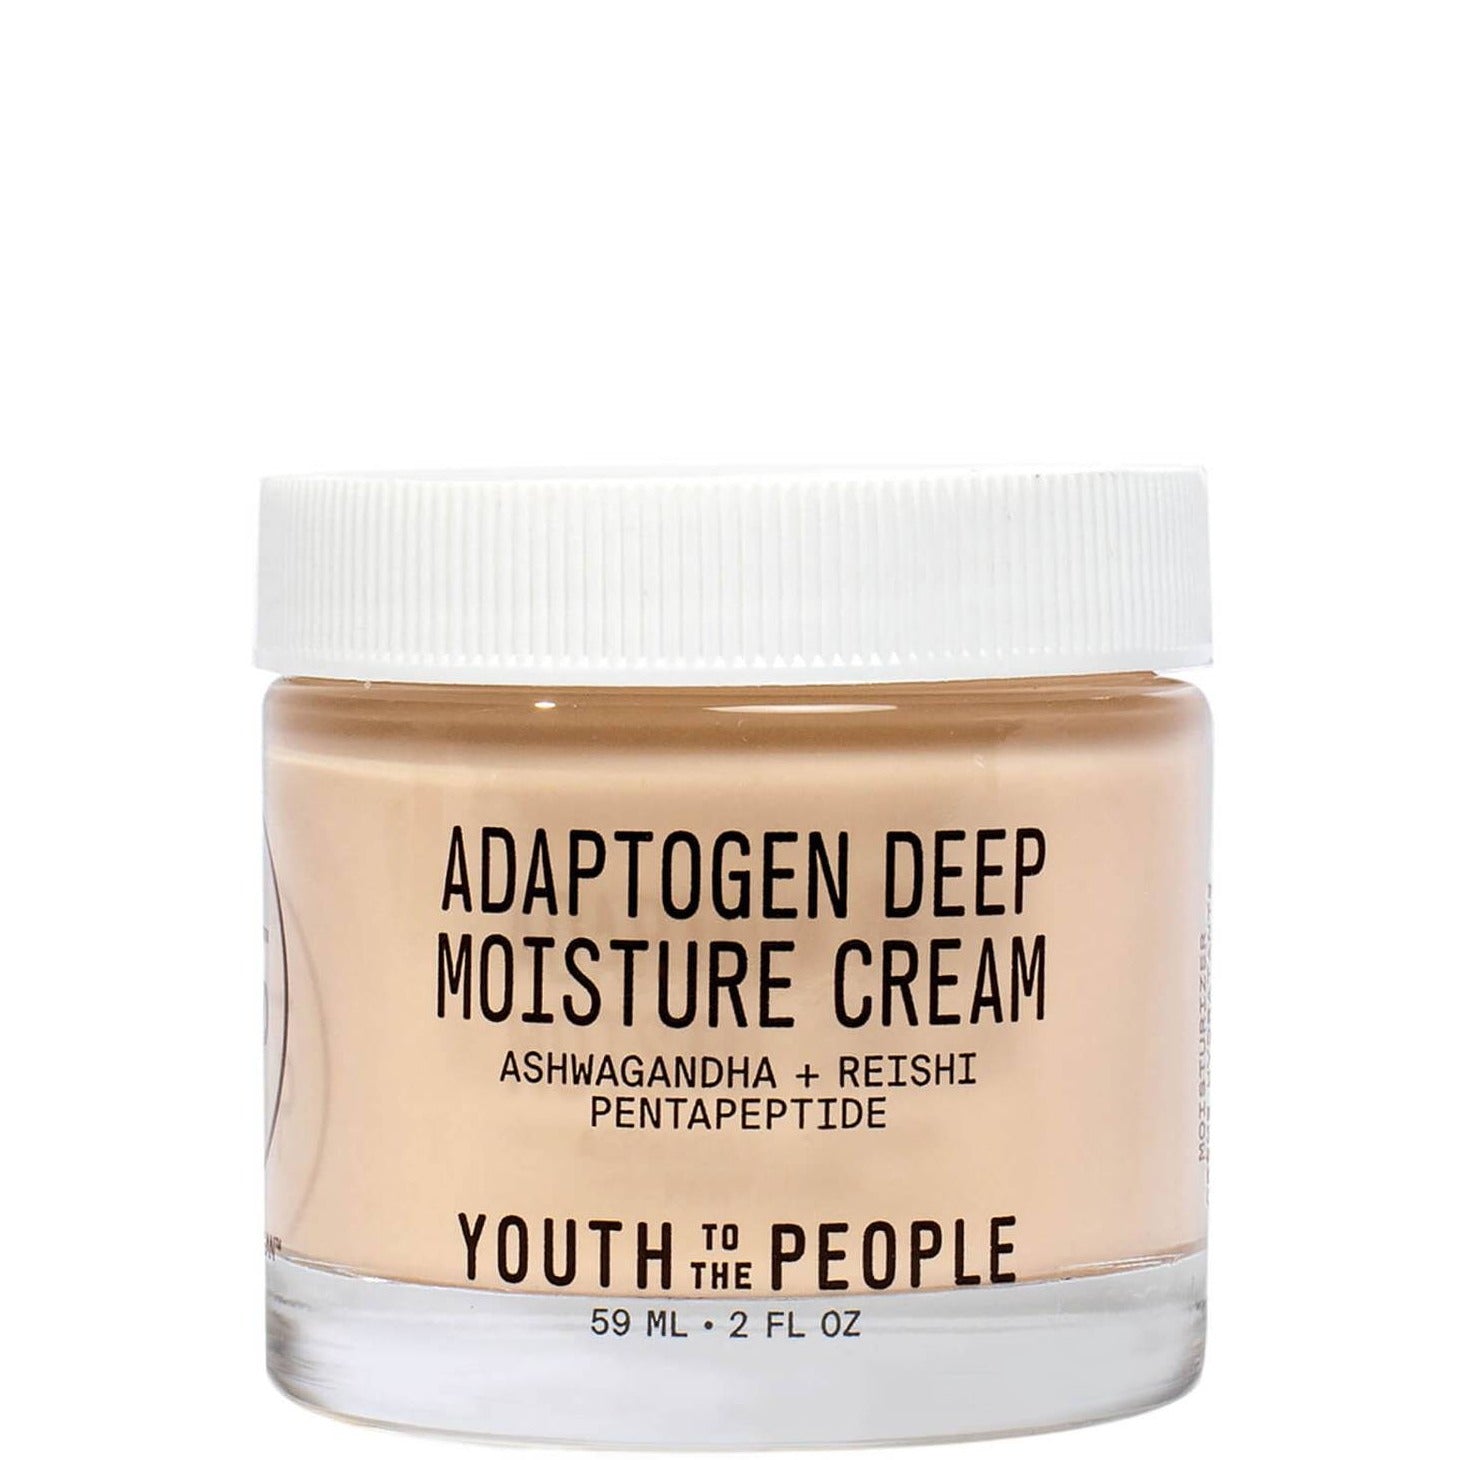 Adaptogen Deep Moisture Cream